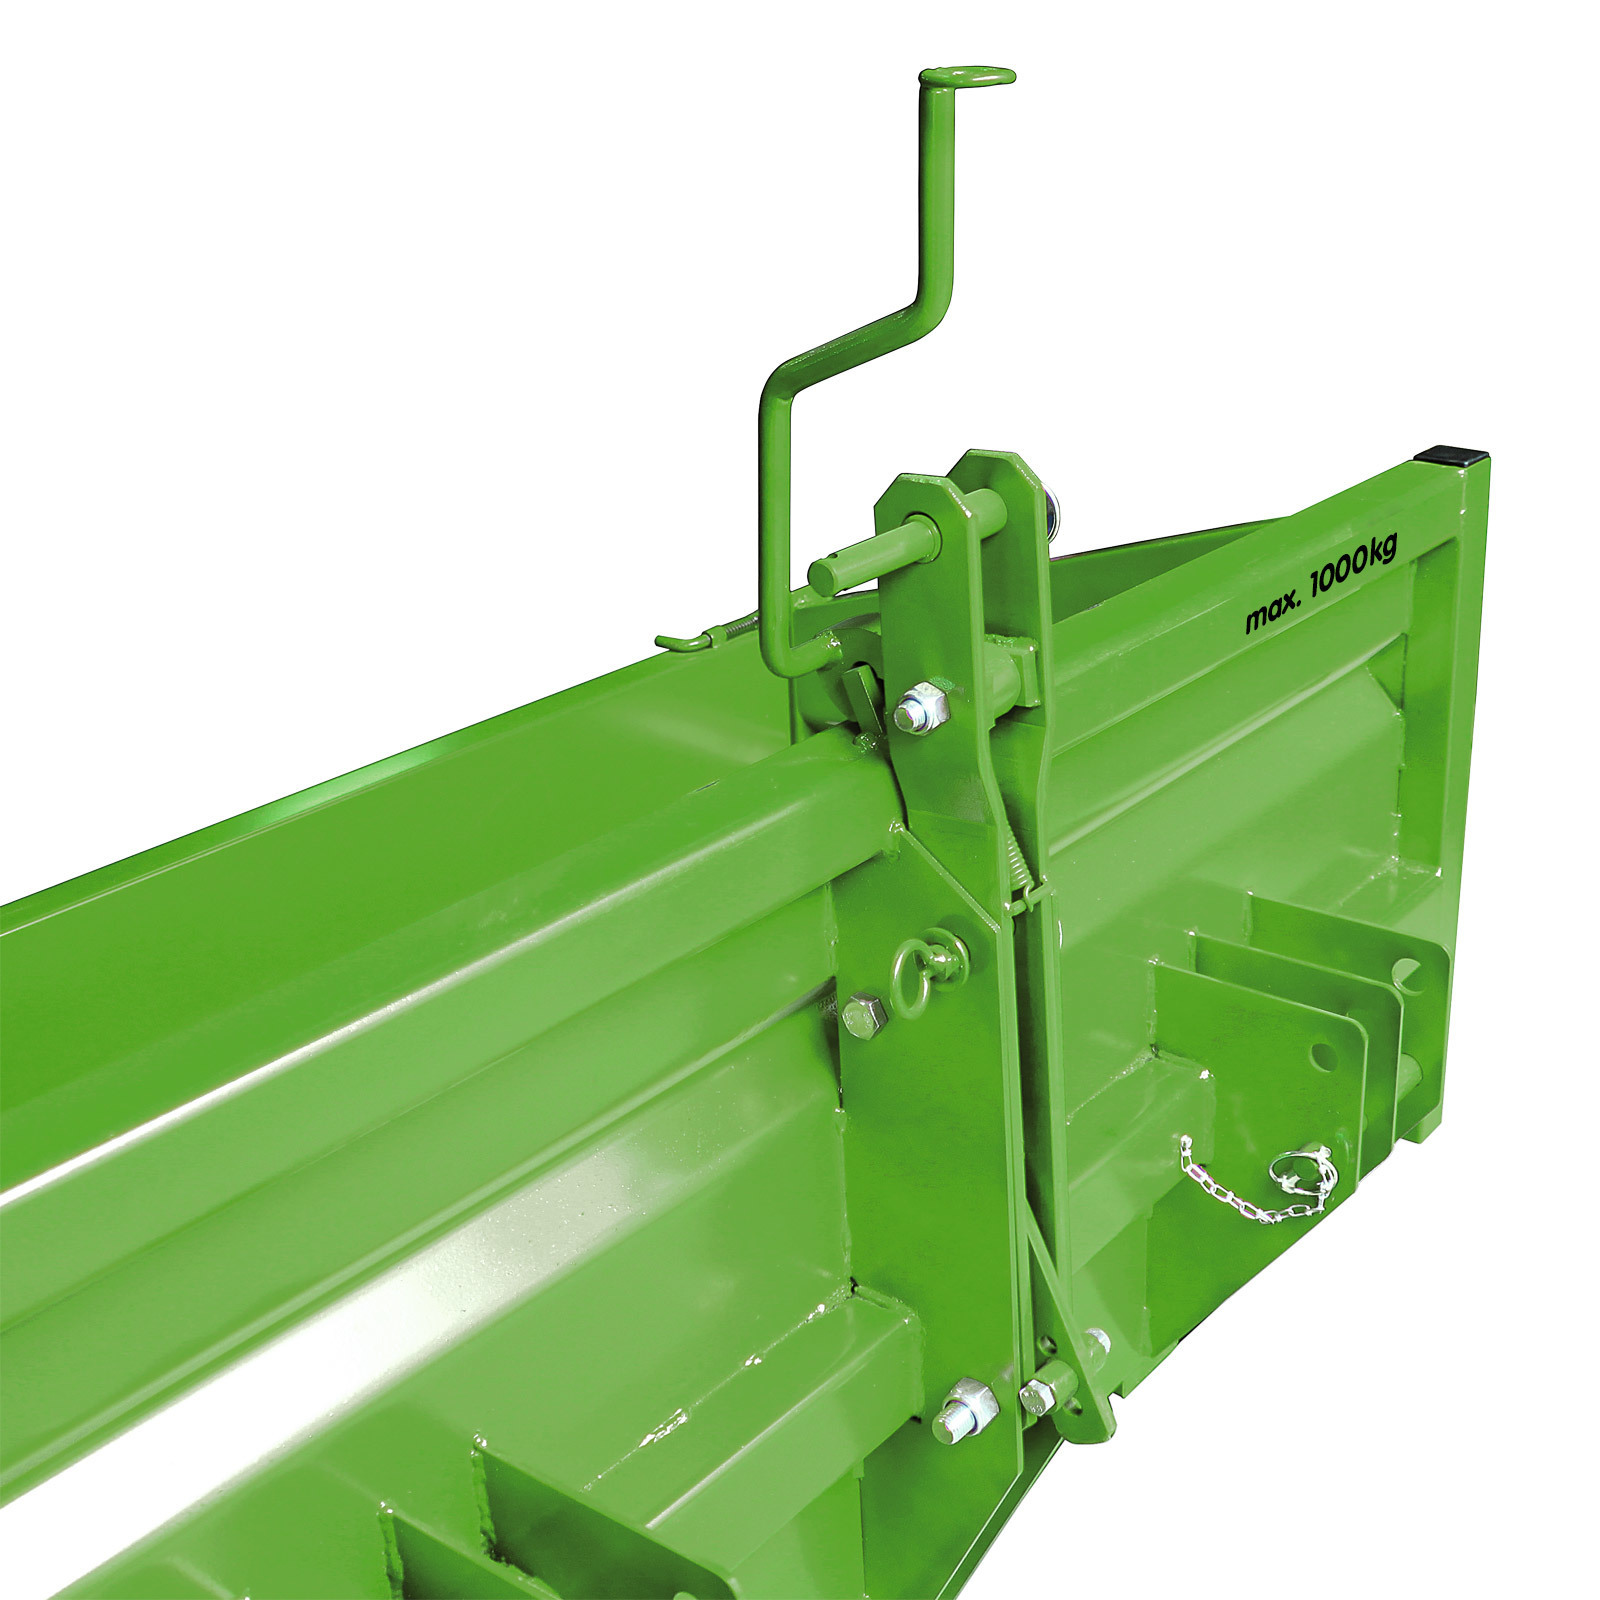 DEMA Heckcontainer / Heckmulde 1500 S / K1-grün aus Stahl